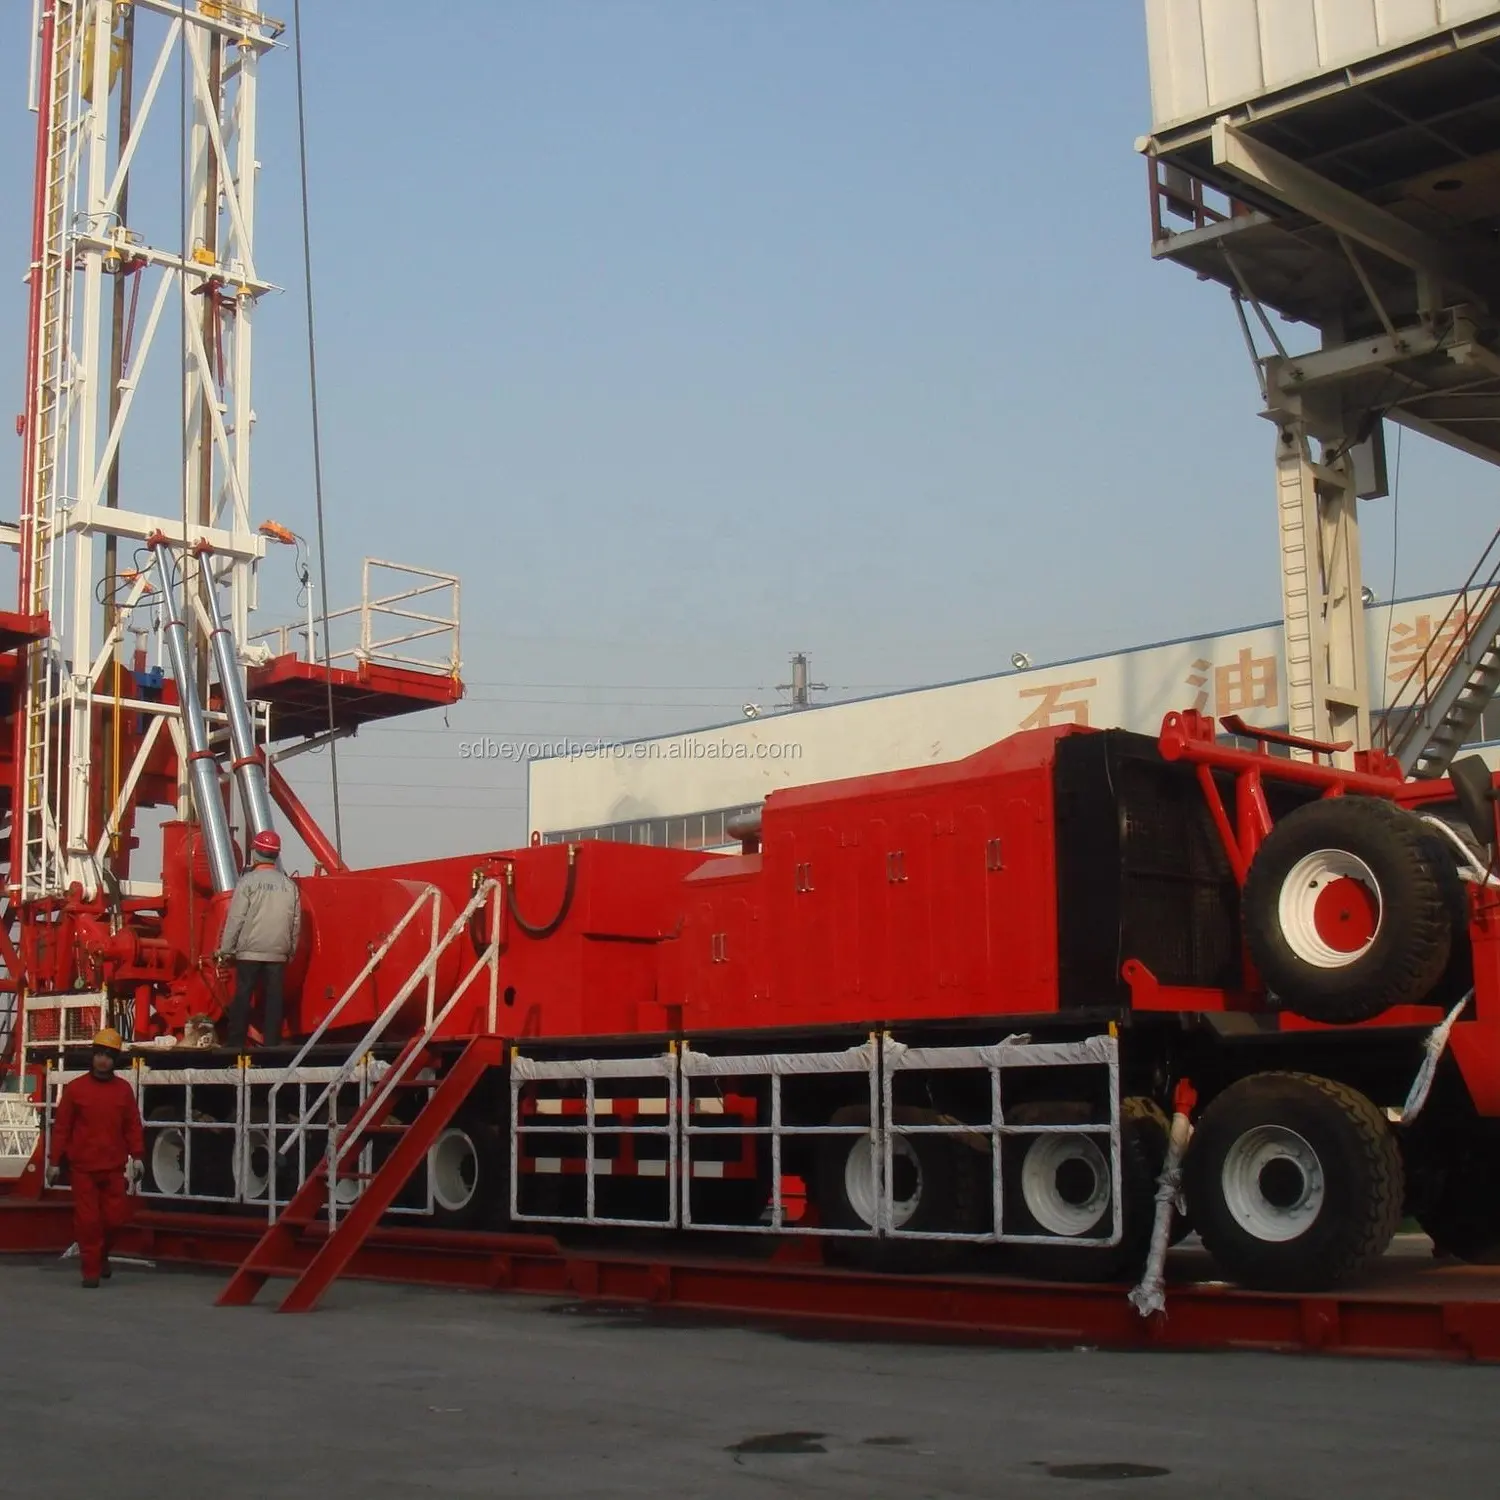 API 550HP Workover petrol ve gaz ekipmanları kulesi maden kaya delme makinesi petrol sahası Offshore kıyı petrol kuyu sondaj donanımları